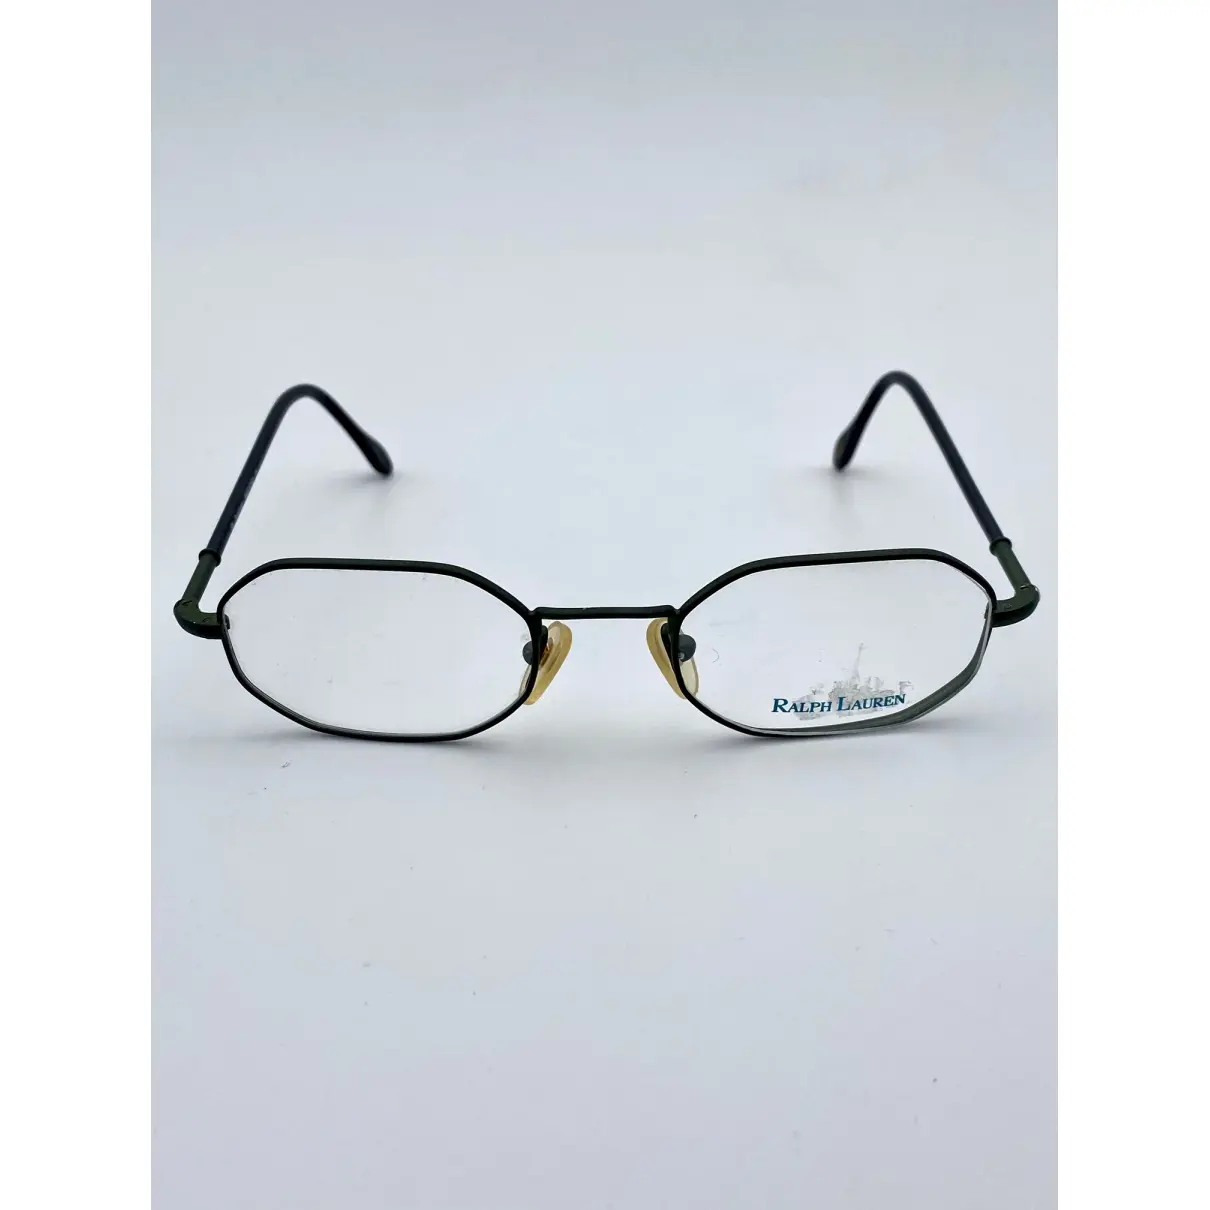 Buy Ralph Lauren Sunglasses online